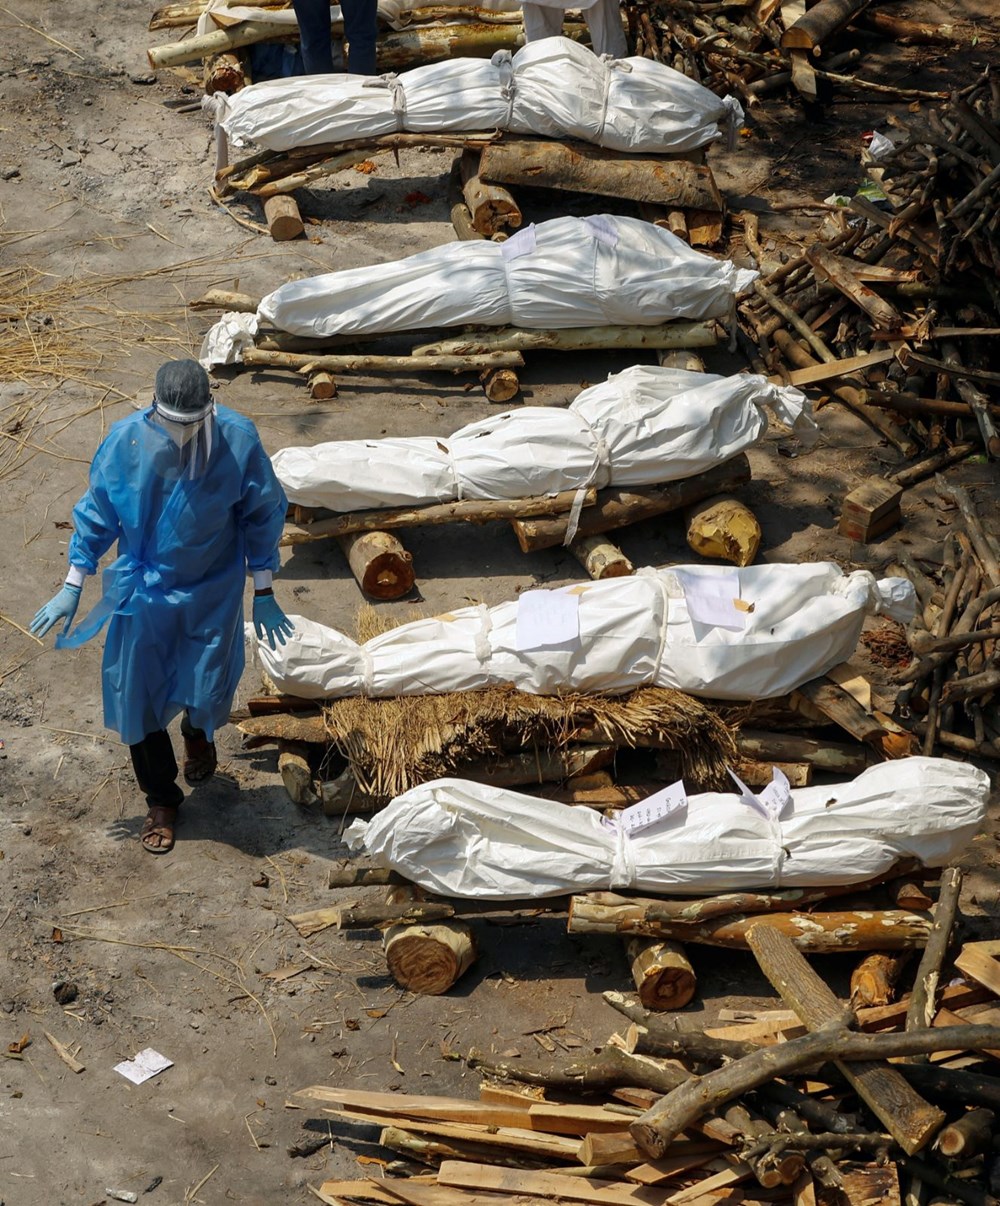 Hindistan'daki ölümcül Covid-19 salgınında son durum: Halk oksijensizlikten ölürken, zenginler özel jetlerle yurt dışına kaçıyor - 10